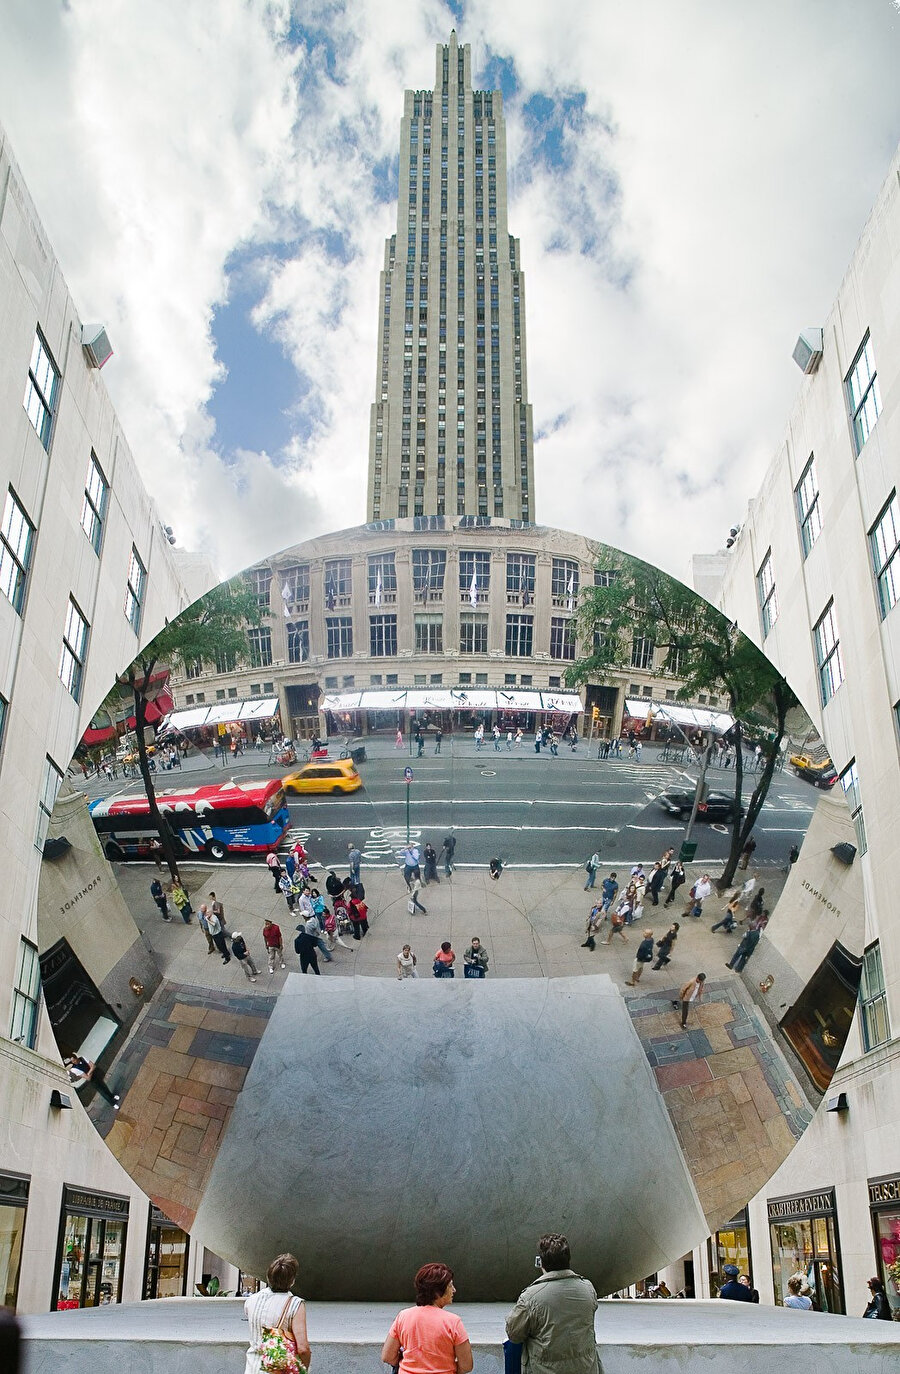 2006 sonbaharında, New York City'deki Rockefeller Center'a 10 metrelik ikinci bir Sky Mirror kuruluyor.